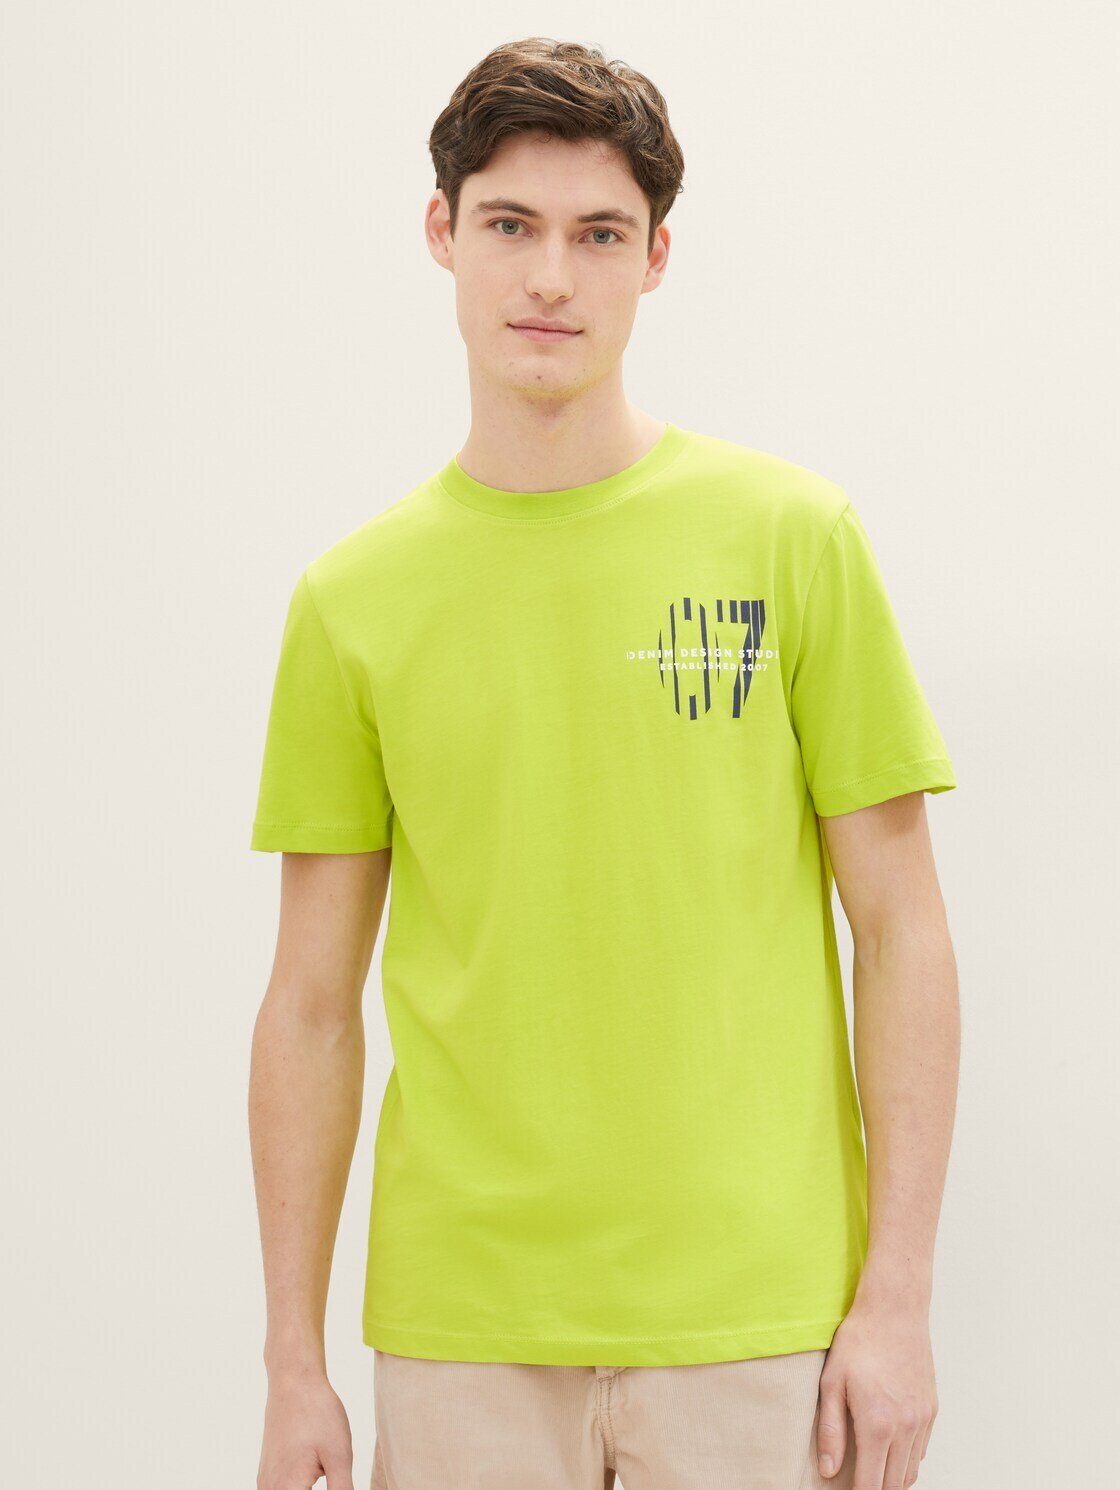 TOM TAILOR Denim T-Shirt T-Shirt mit Print juicy kiwi